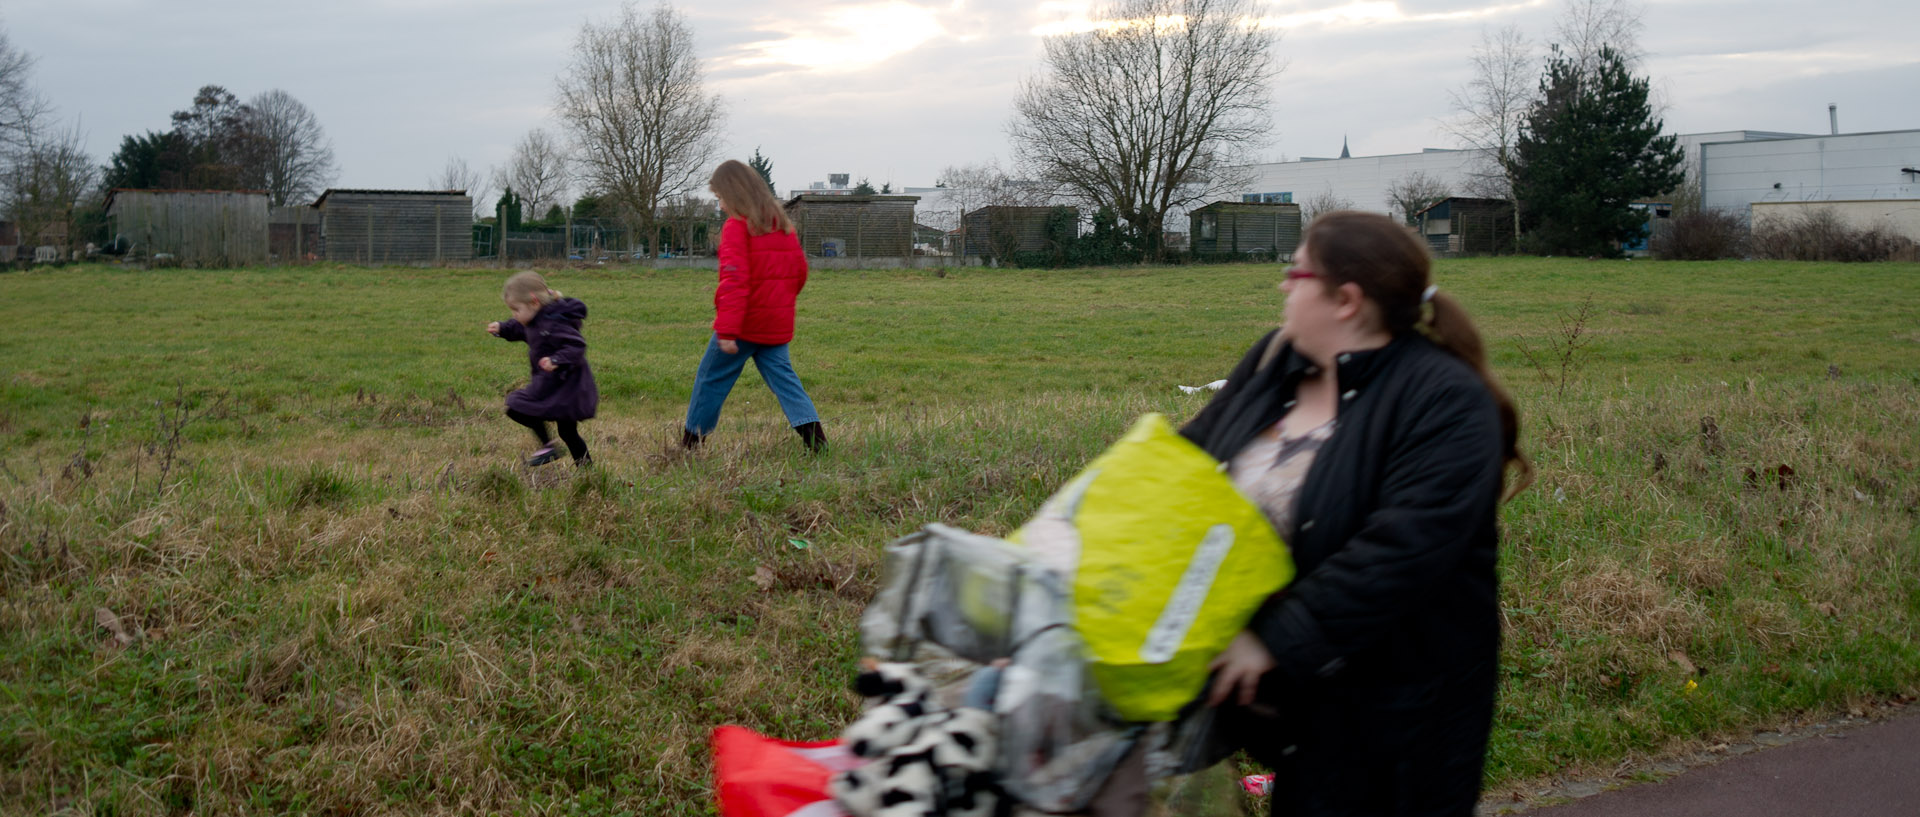 Femme avec deux enfants et une poussette chargée de sacs, rue Robert-Schumann, à Tourcoing.